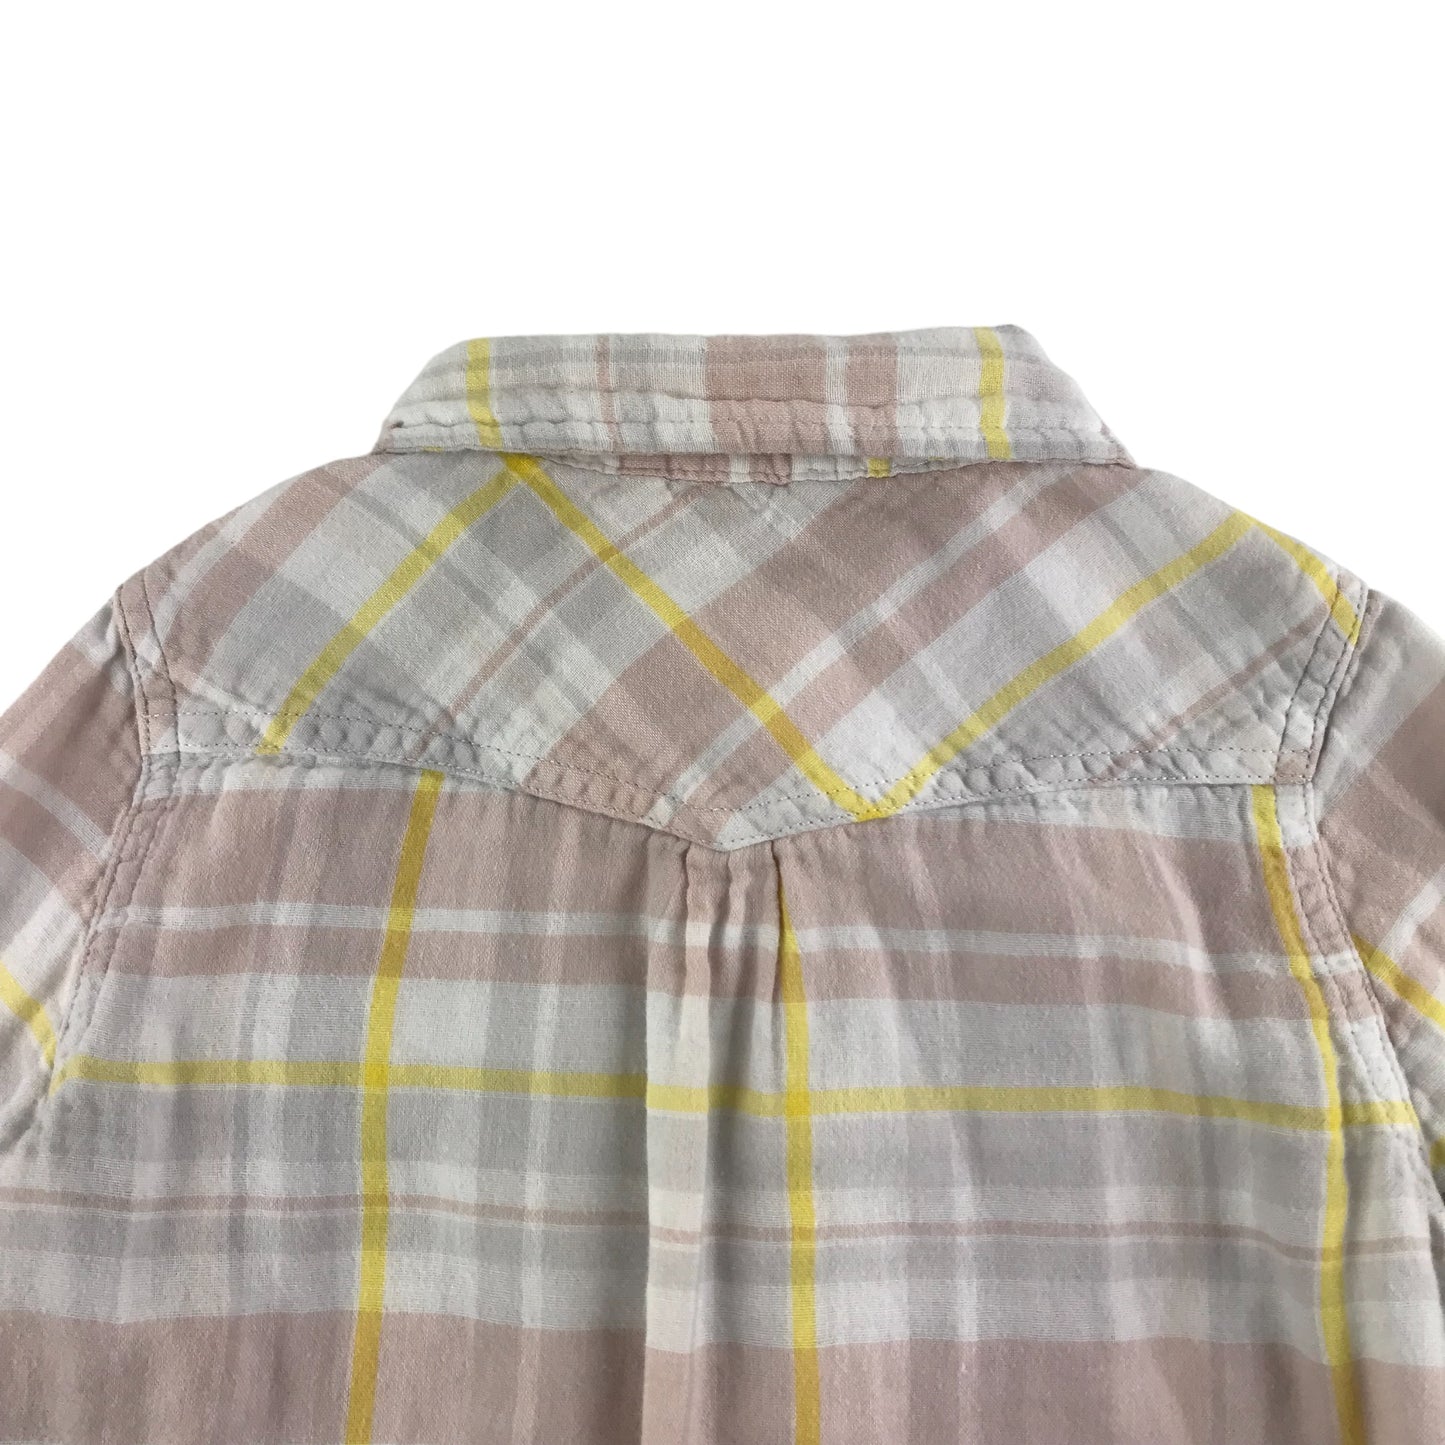 Stella McCartney Shirt Age 7-8 Light pink and Yellow Button Up Cotton